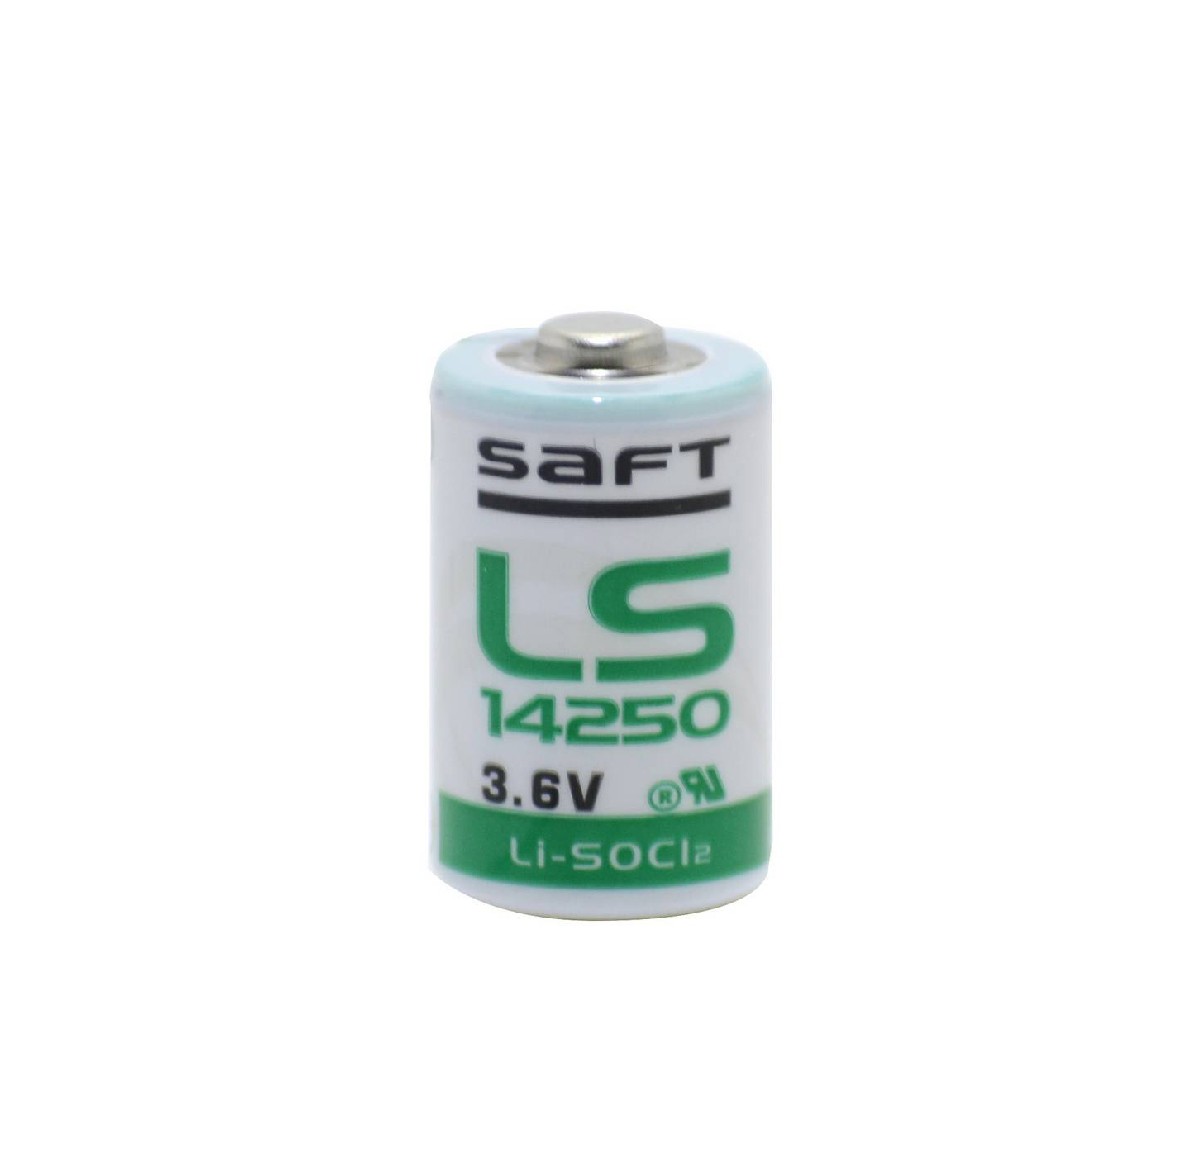 Μπαταρία Saft LS 14250 Li-SOCl2 250mAh 3.6V 1/2AA